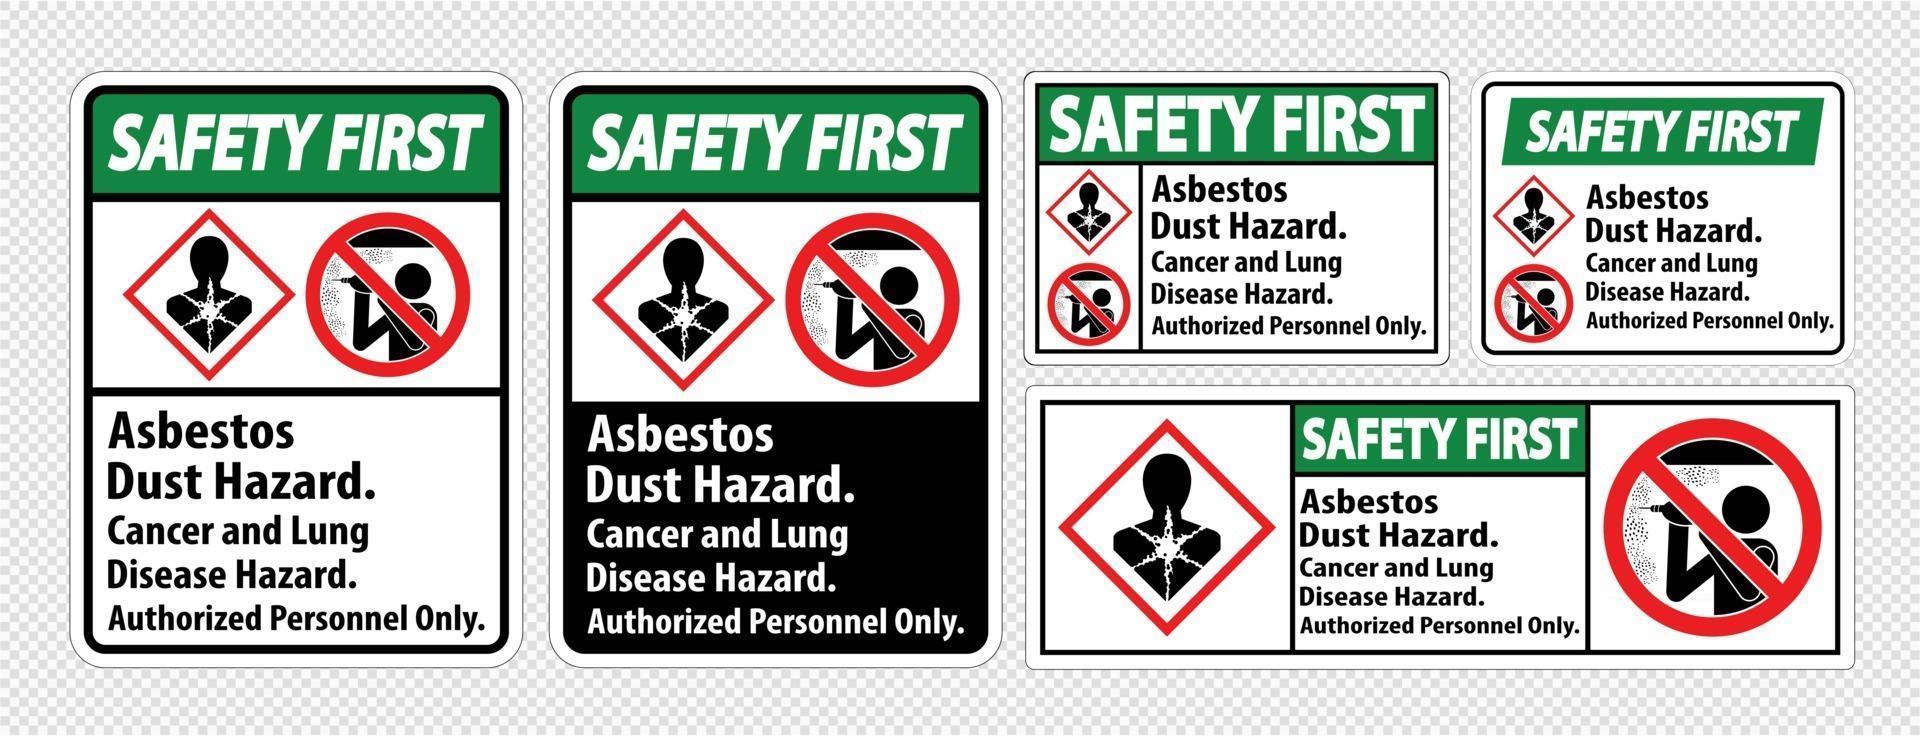 Première étiquette de sécurité, risque de poussière d'amiante, risque de cancer et de maladie pulmonaire personnel autorisé uniquement vecteur